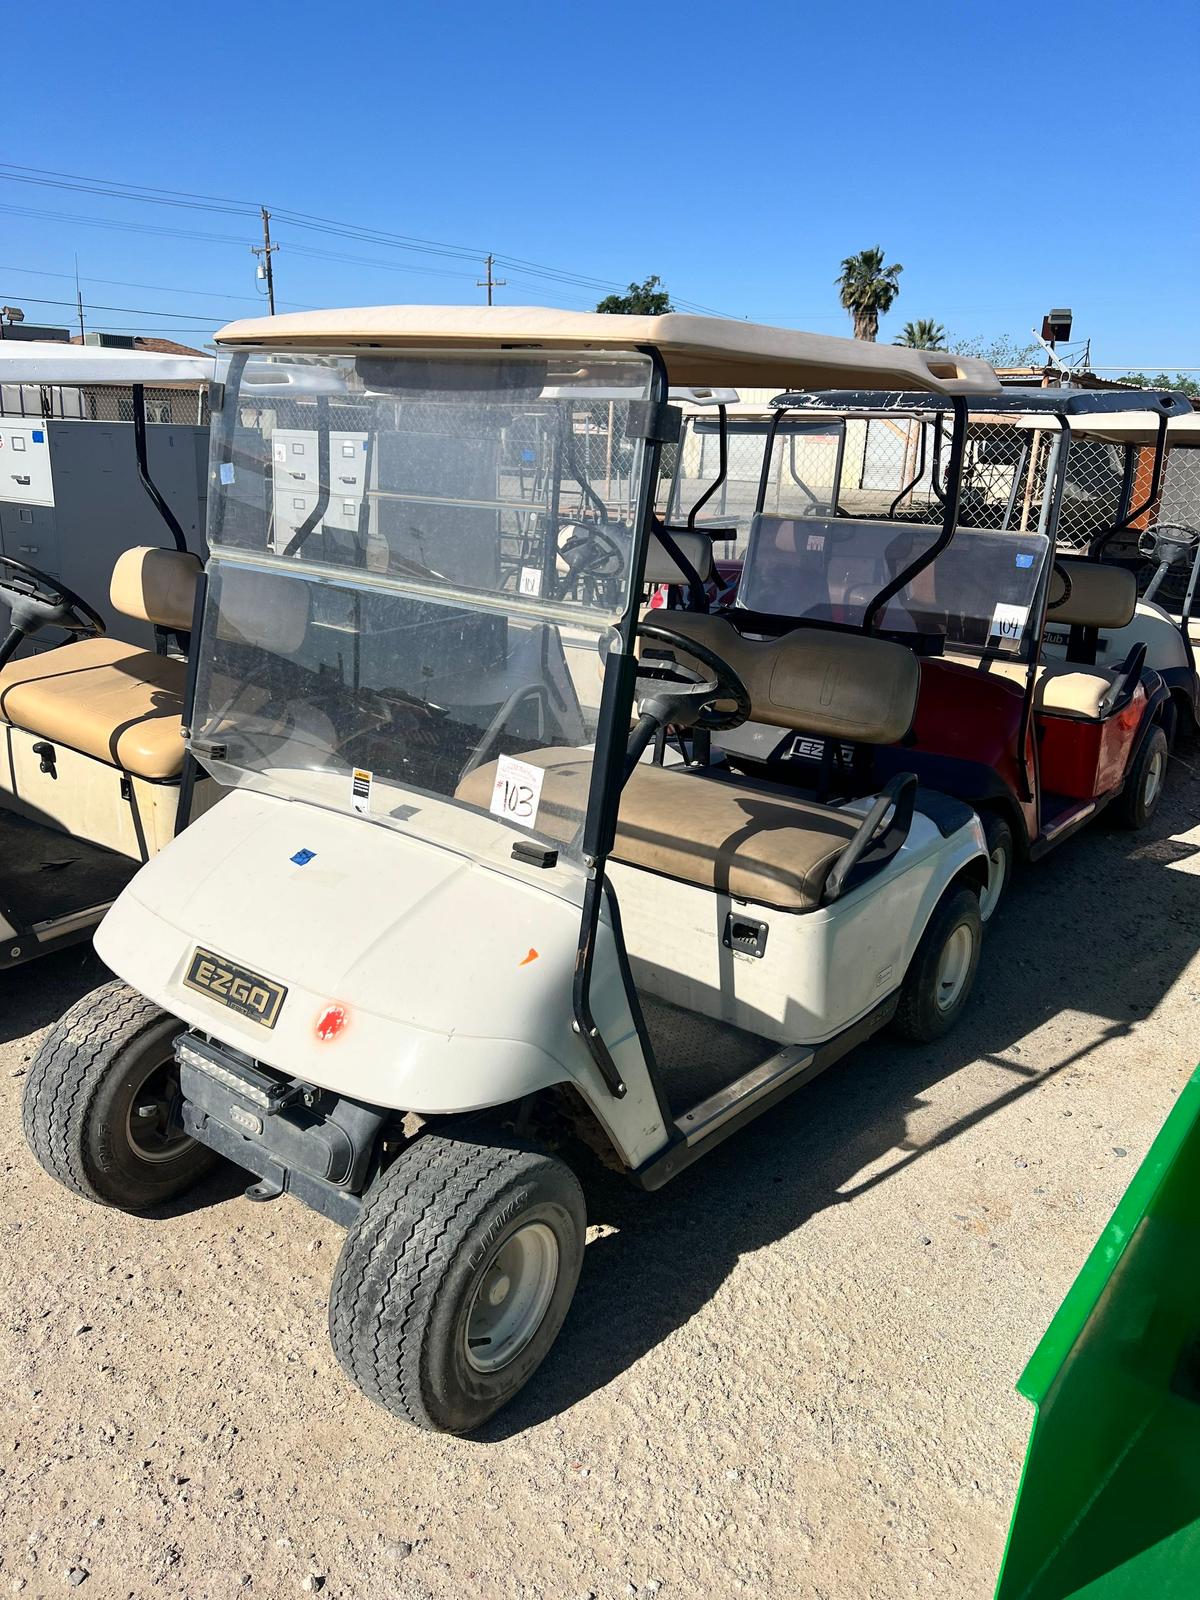 Golf cart does not run